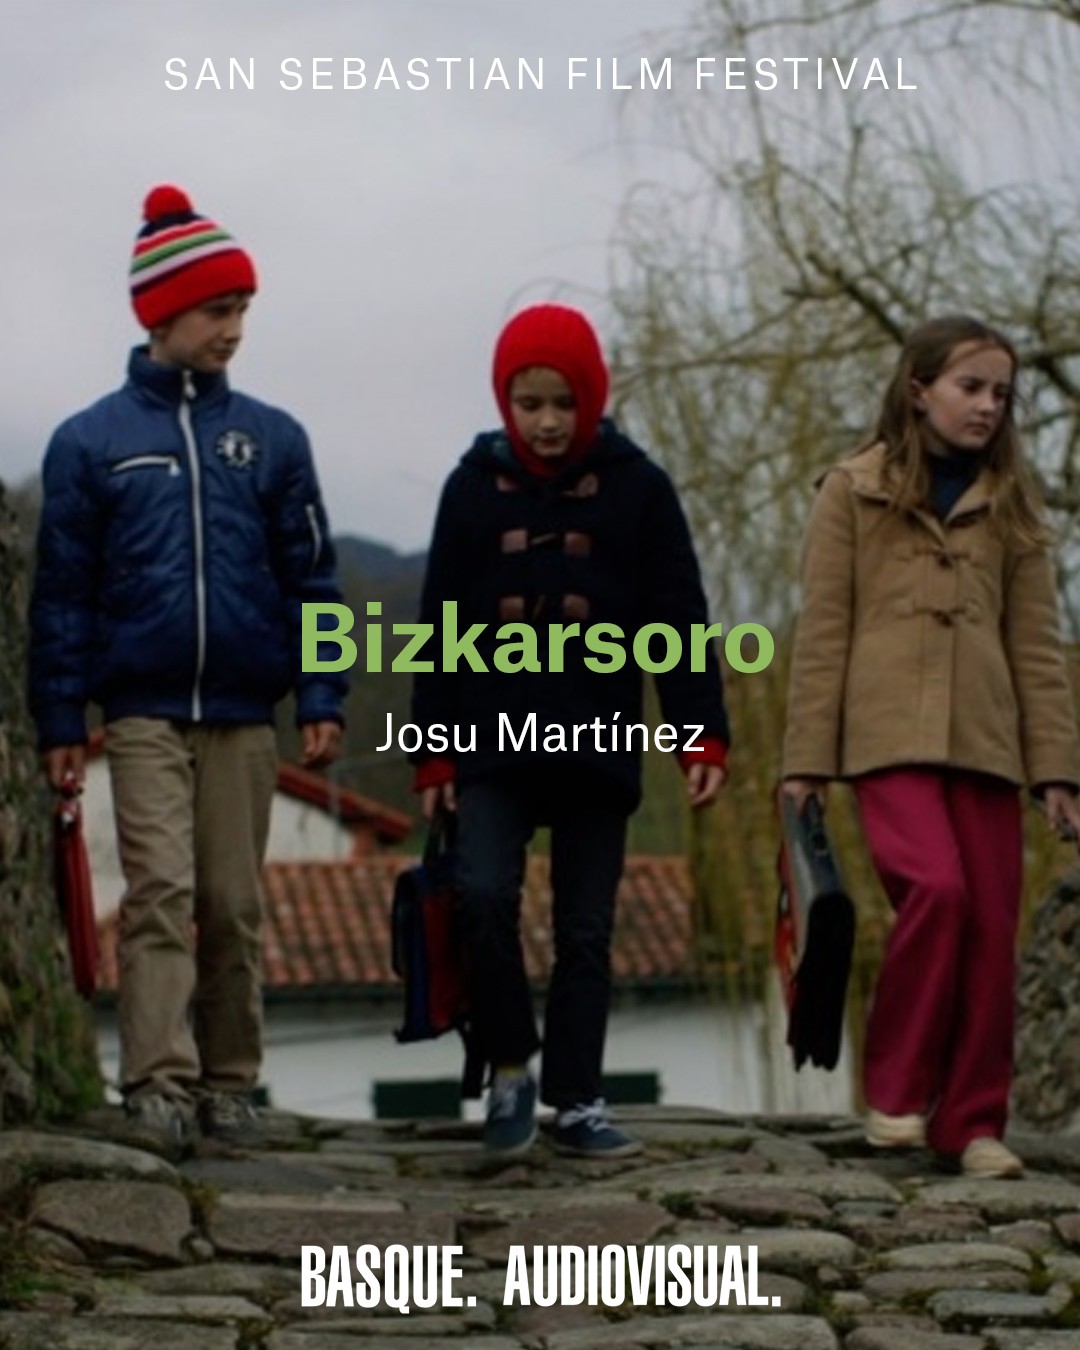 “Bizkarsoro es un proyecto popular, creado con la ayuda de más de 200 vecinos de Baigorri”